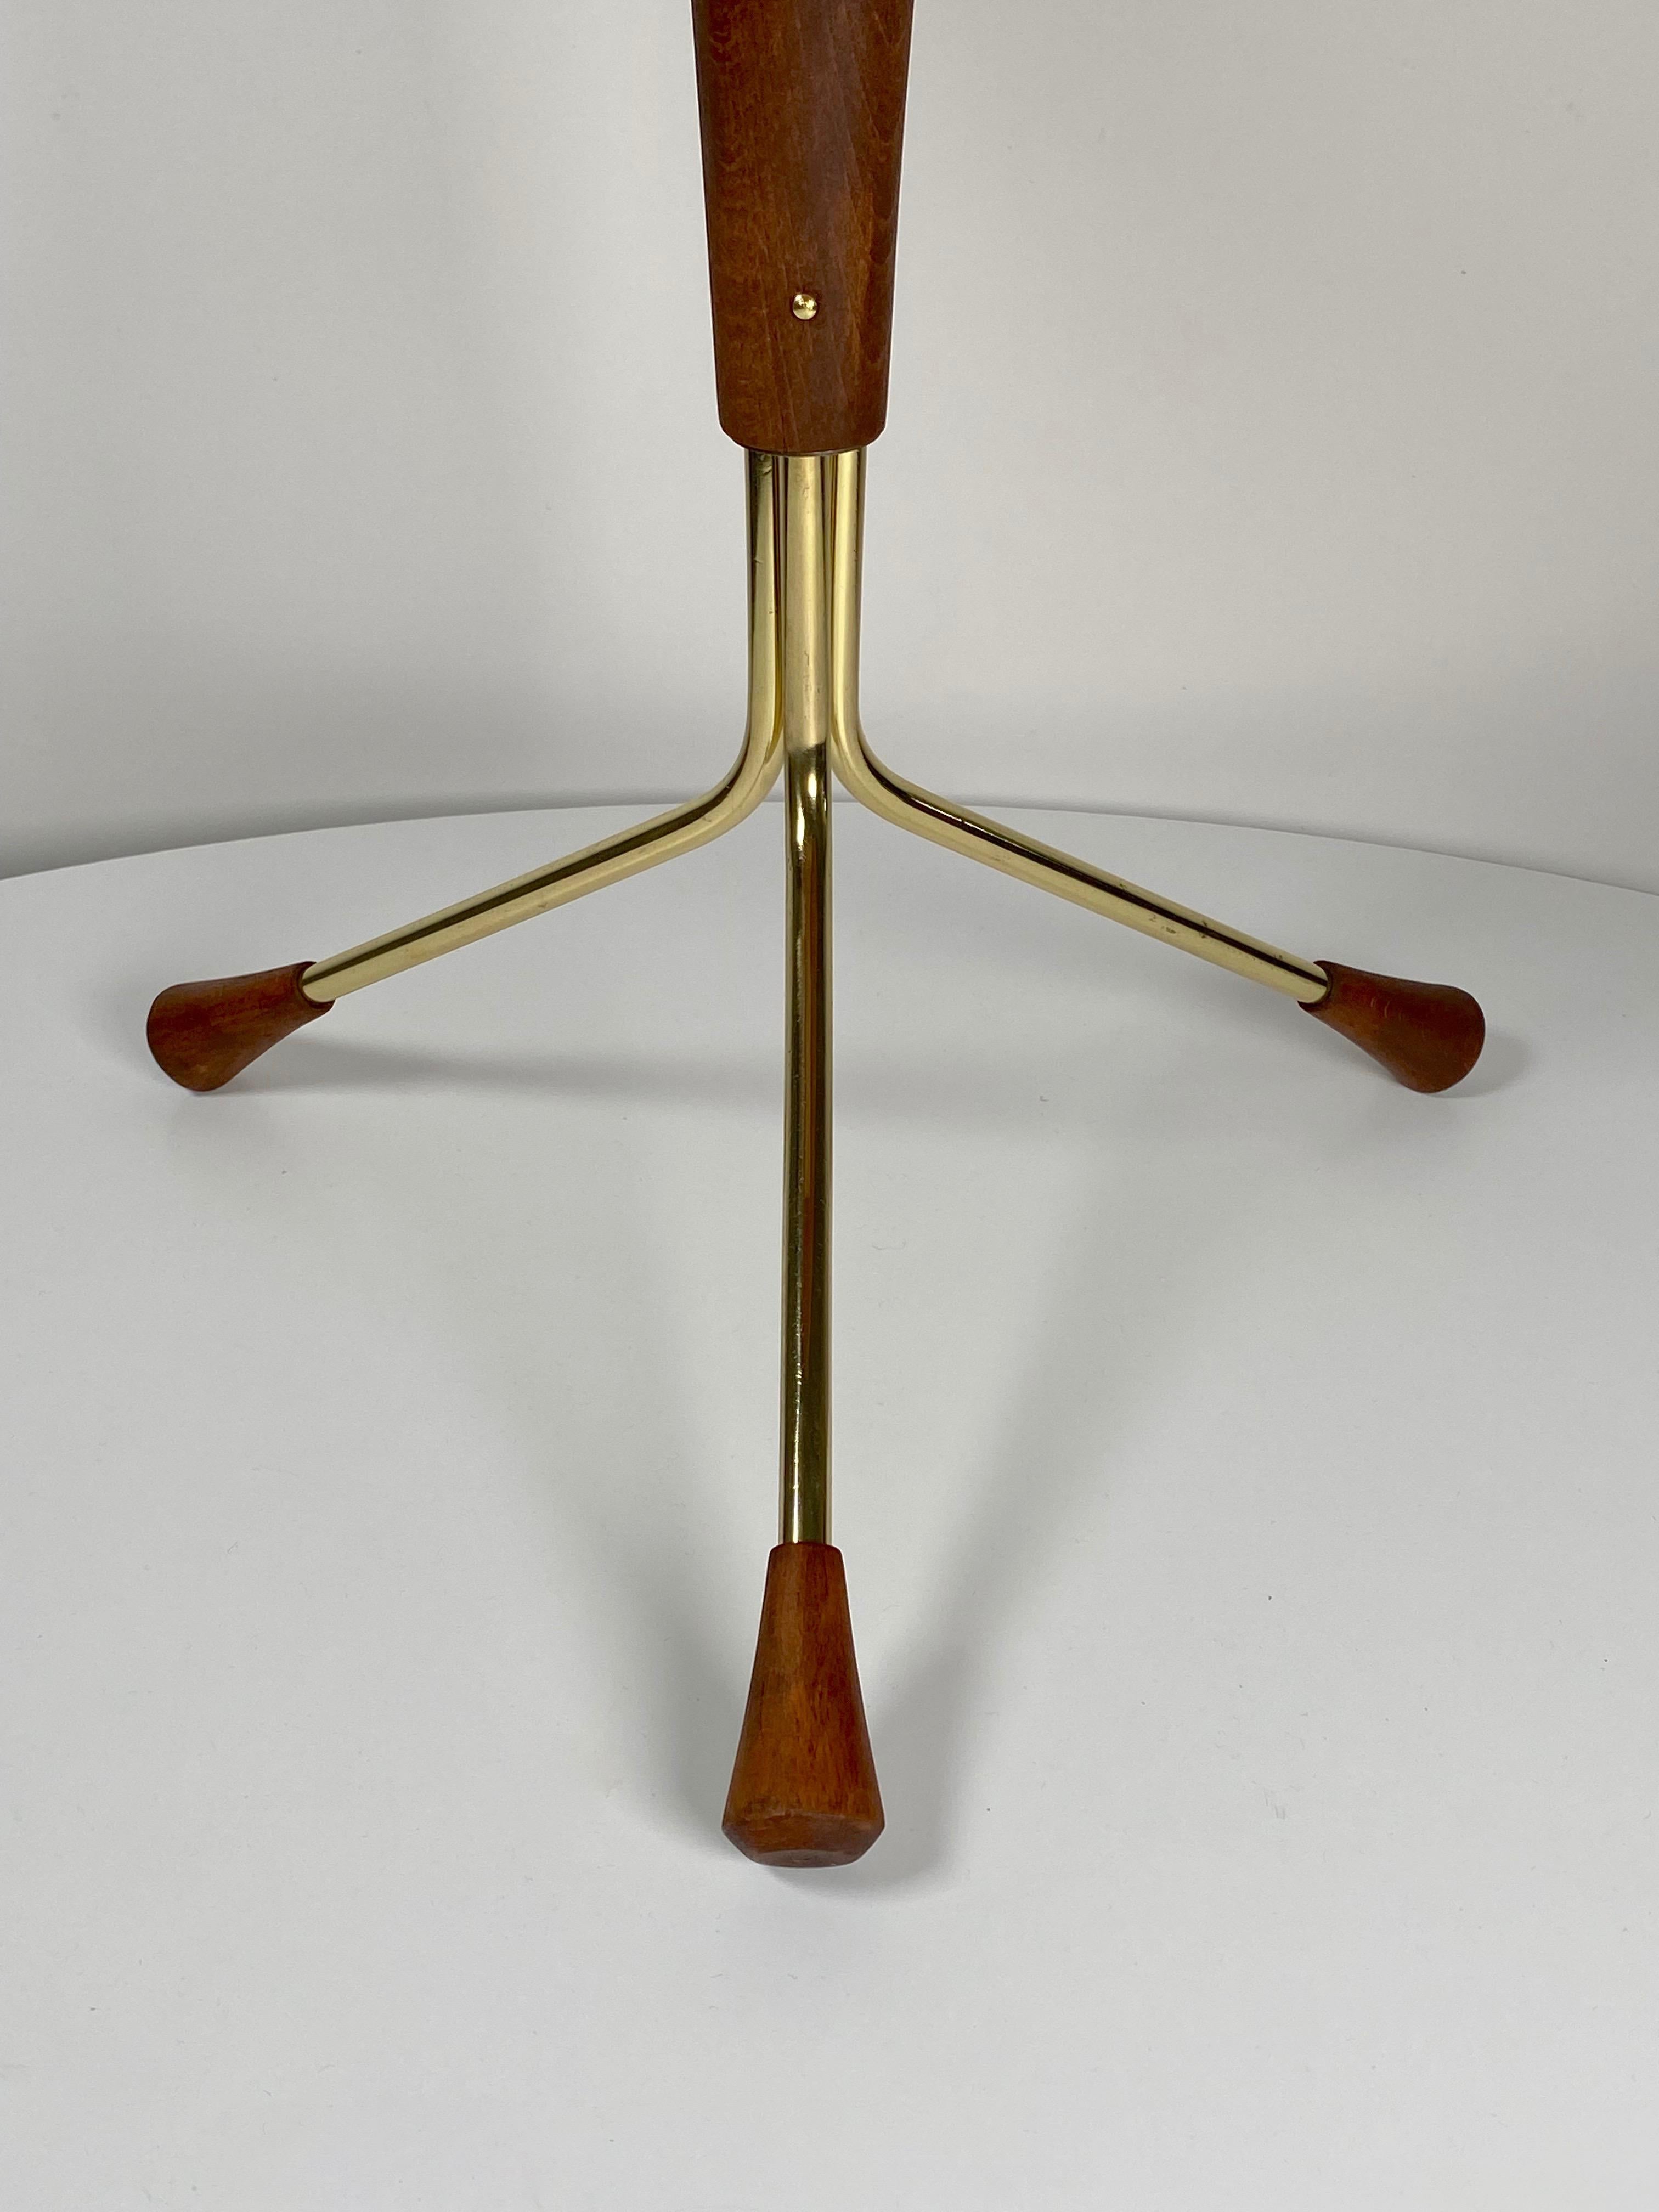 Mid-20th Century Small Tripod Base Table by Swedish Designer Alberts Larrson for Alberts Tibro